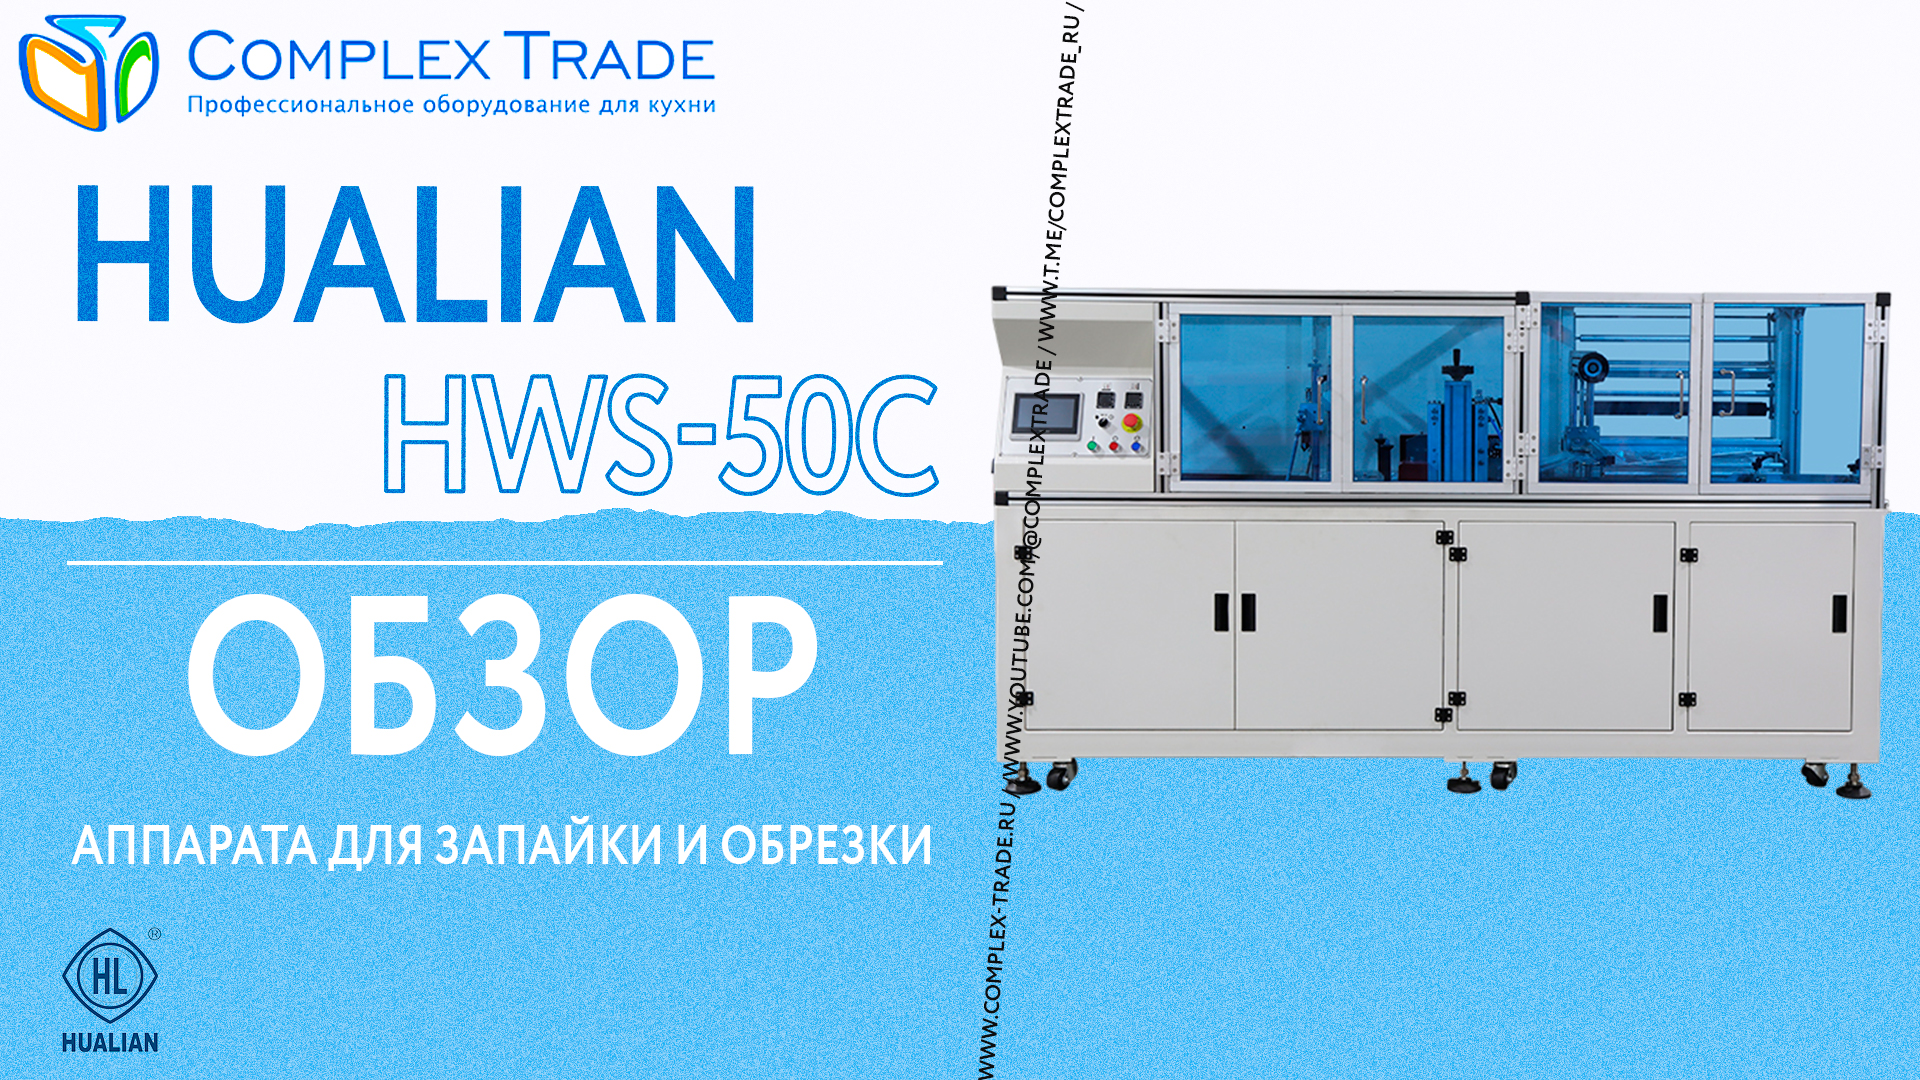 Hualian HWS-50C - Обзор аппарата для запайки и обрезки